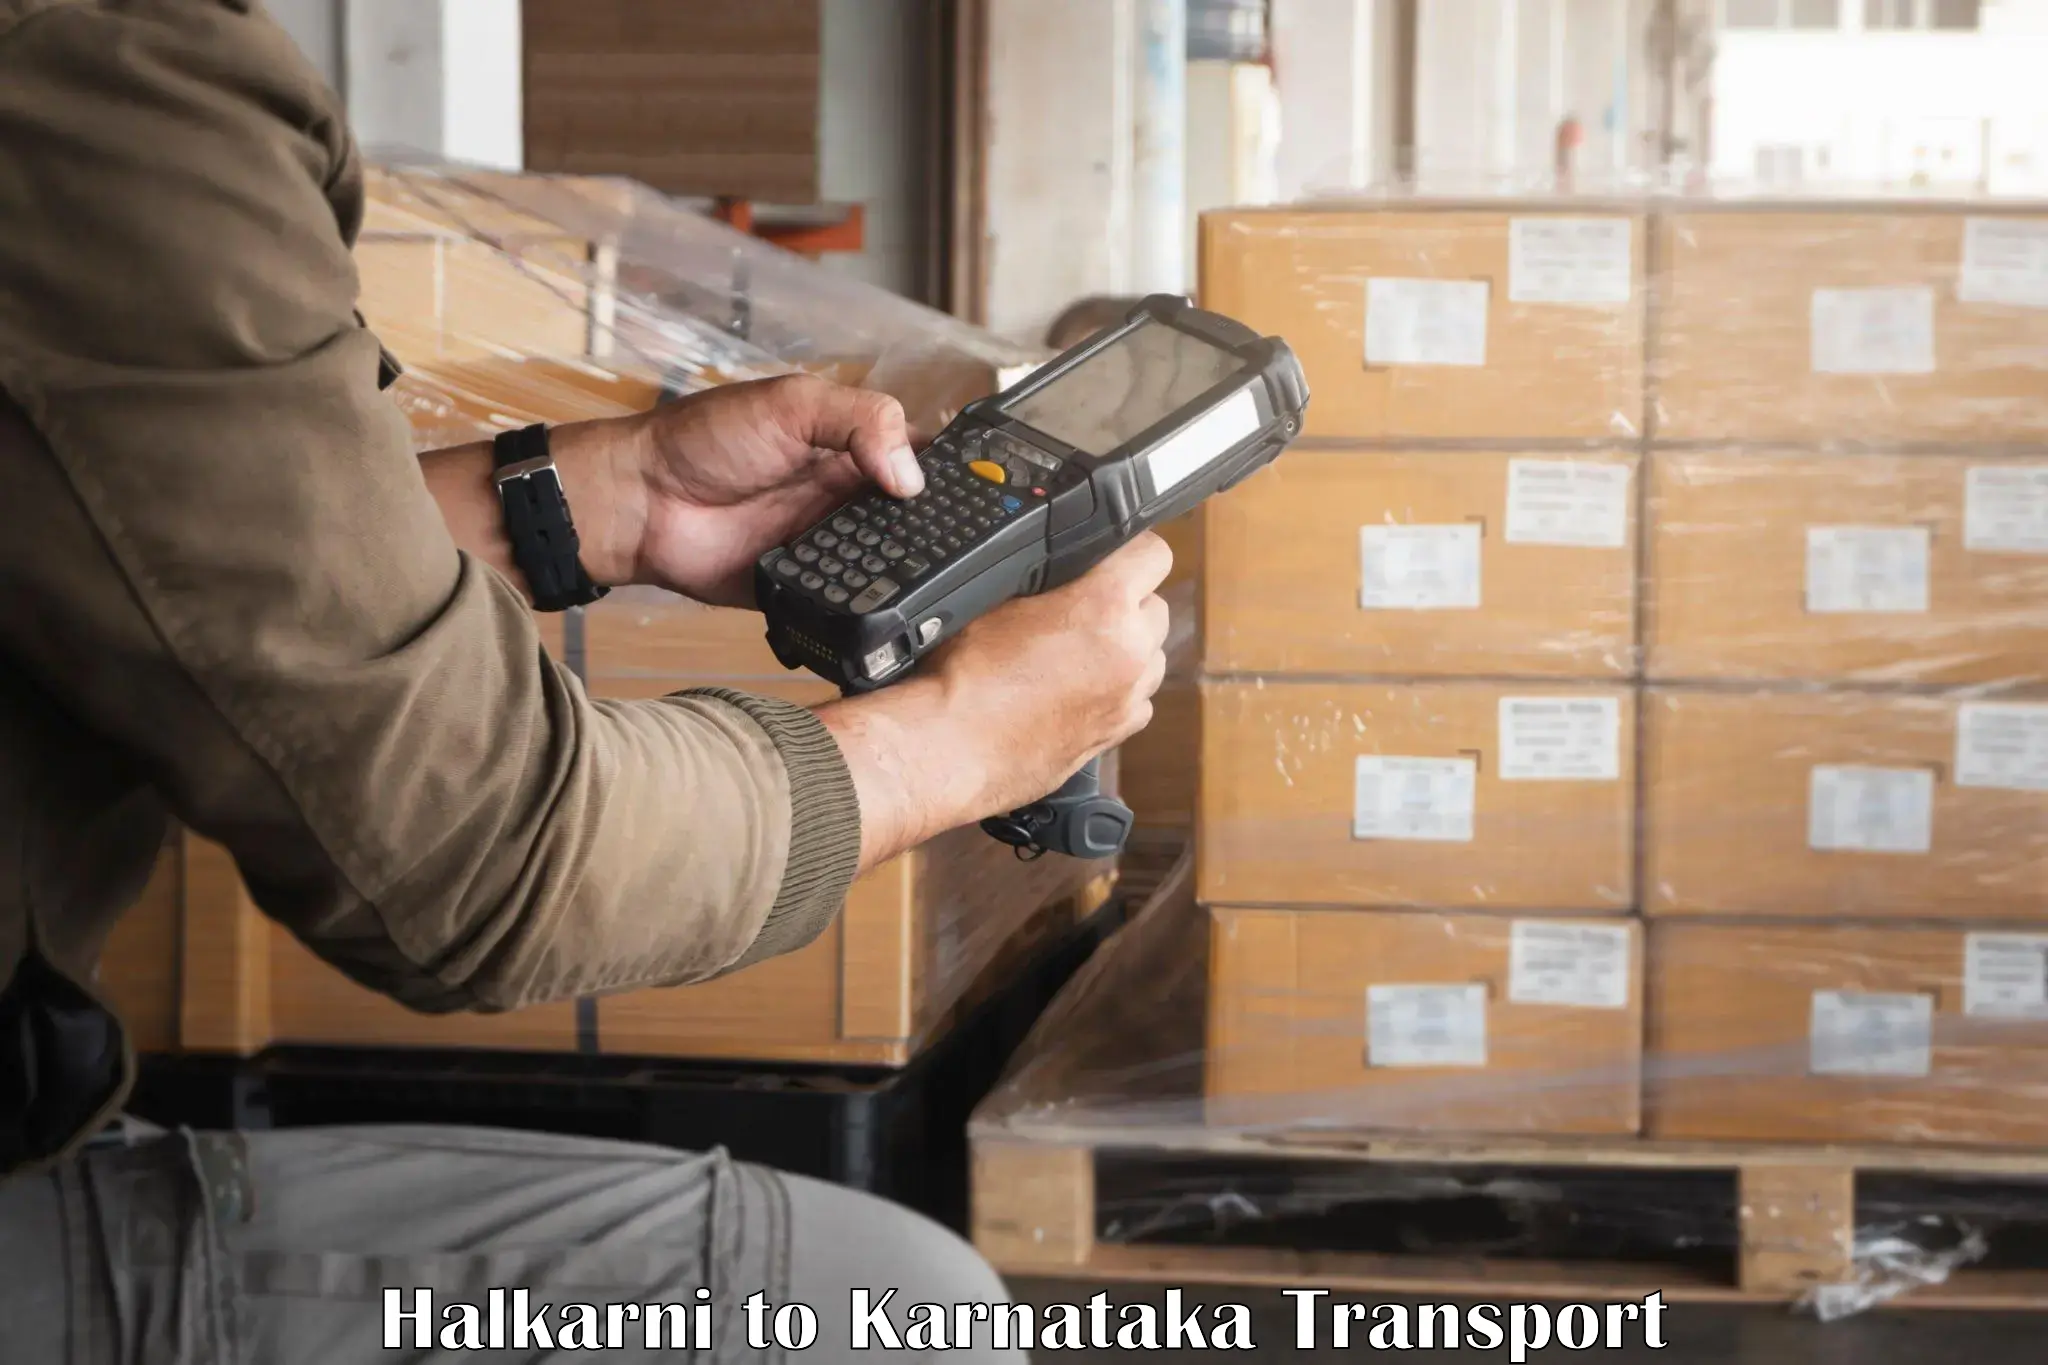 Daily transport service Halkarni to Kulshekar